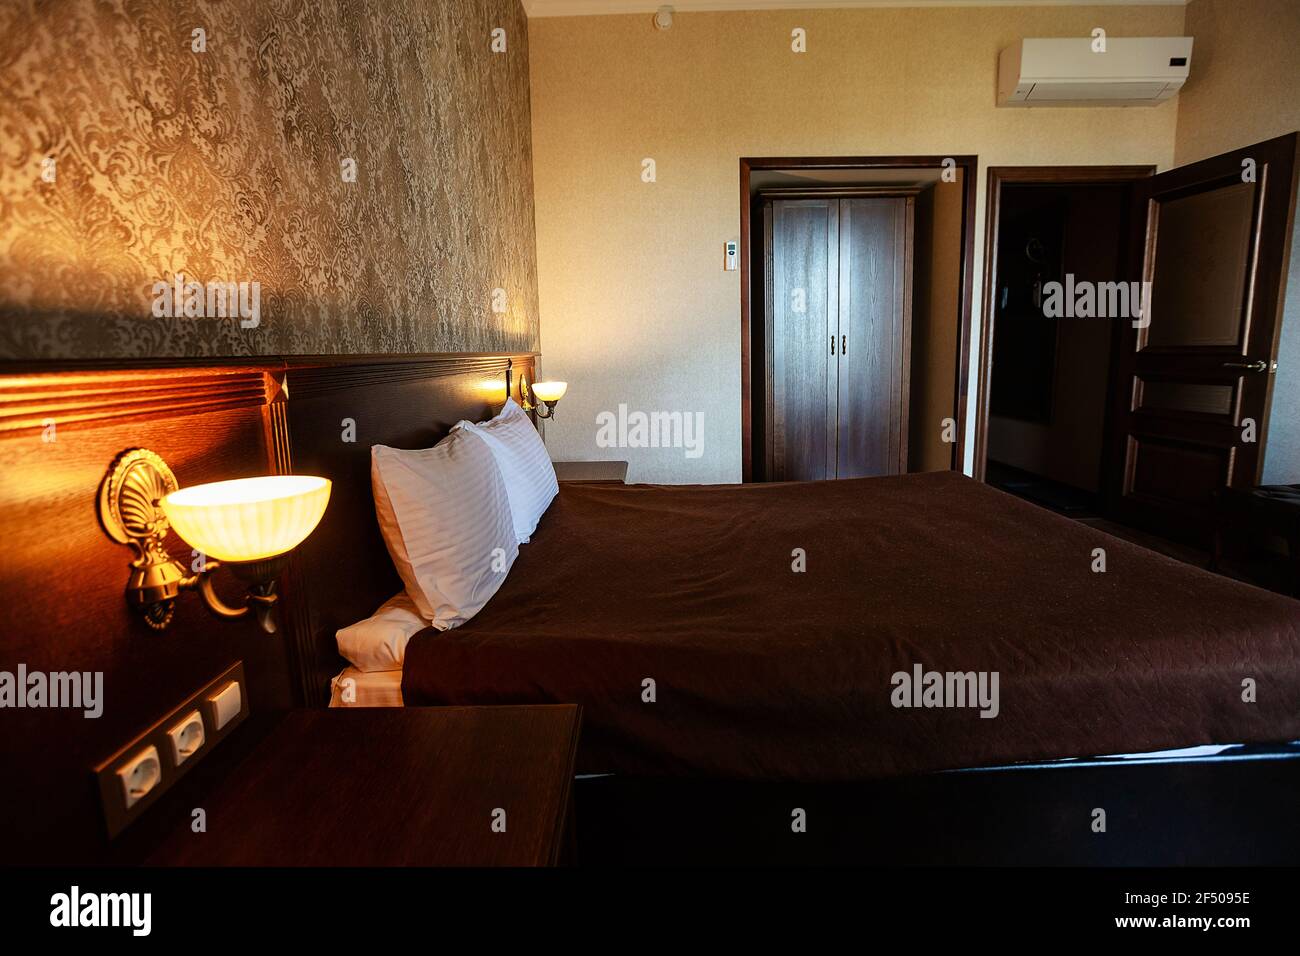 cama y lámpara en el hotel. interior acogedor y sencillo en el dormitorio. una habitación en colores oscuros para que los huéspedes se relajen Foto de stock